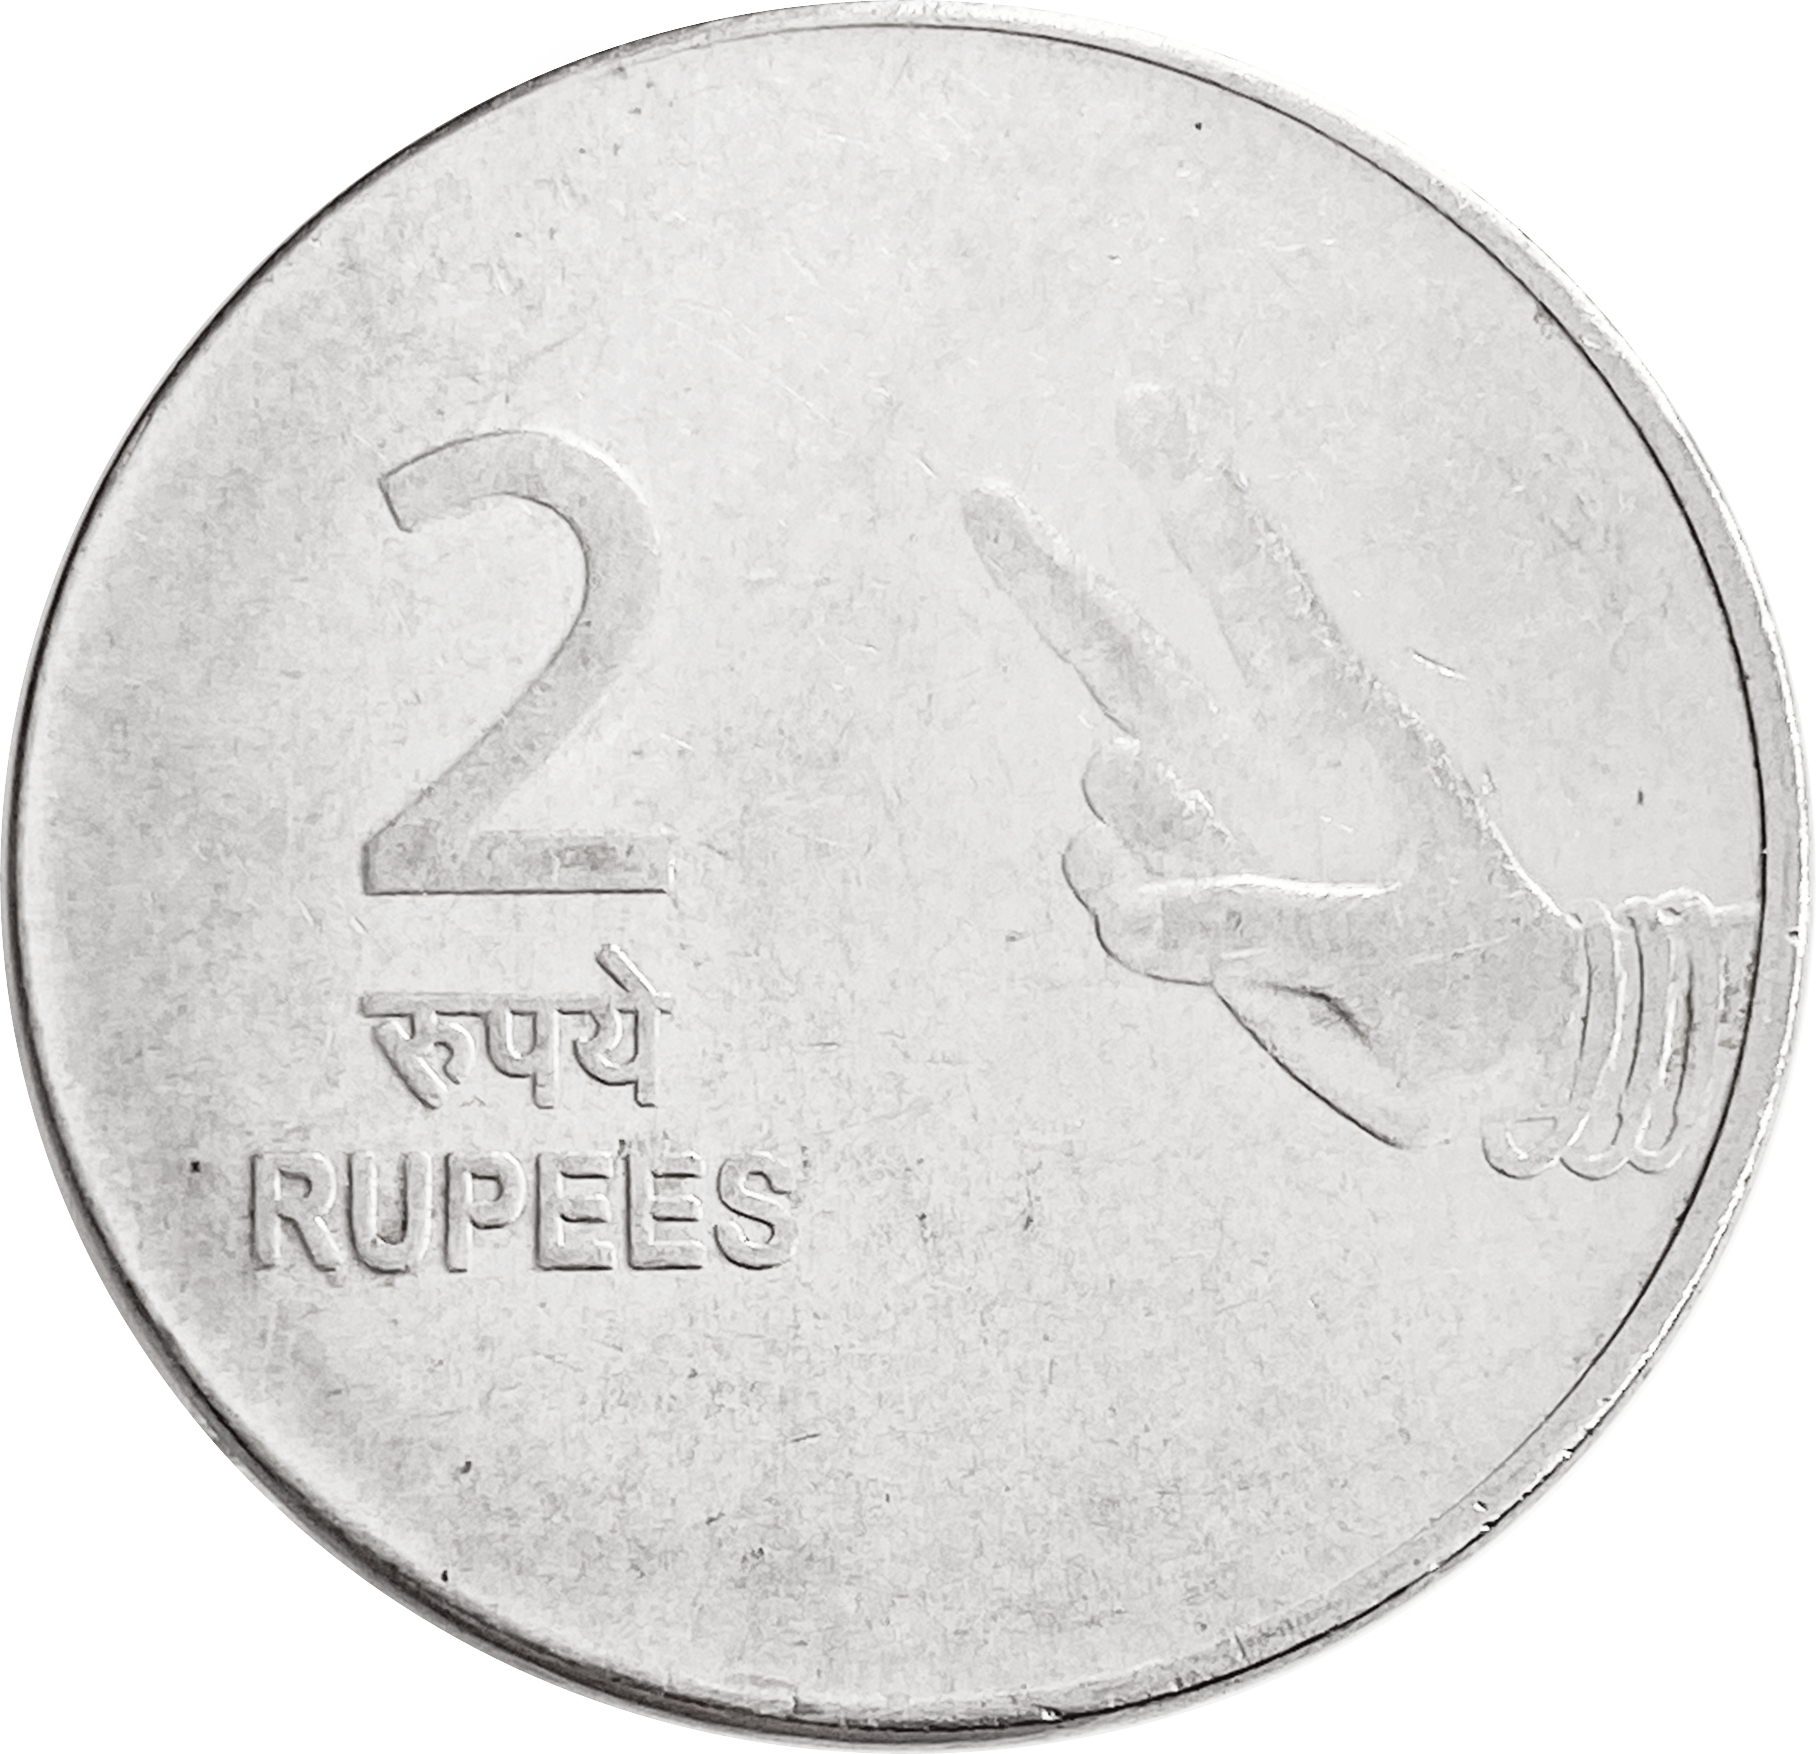 Млн рупий в рублях. 2 Рупии монета. 2 Рупии в рублях. Монета 2 рупия Индия 2007 г. 3 Рупии.